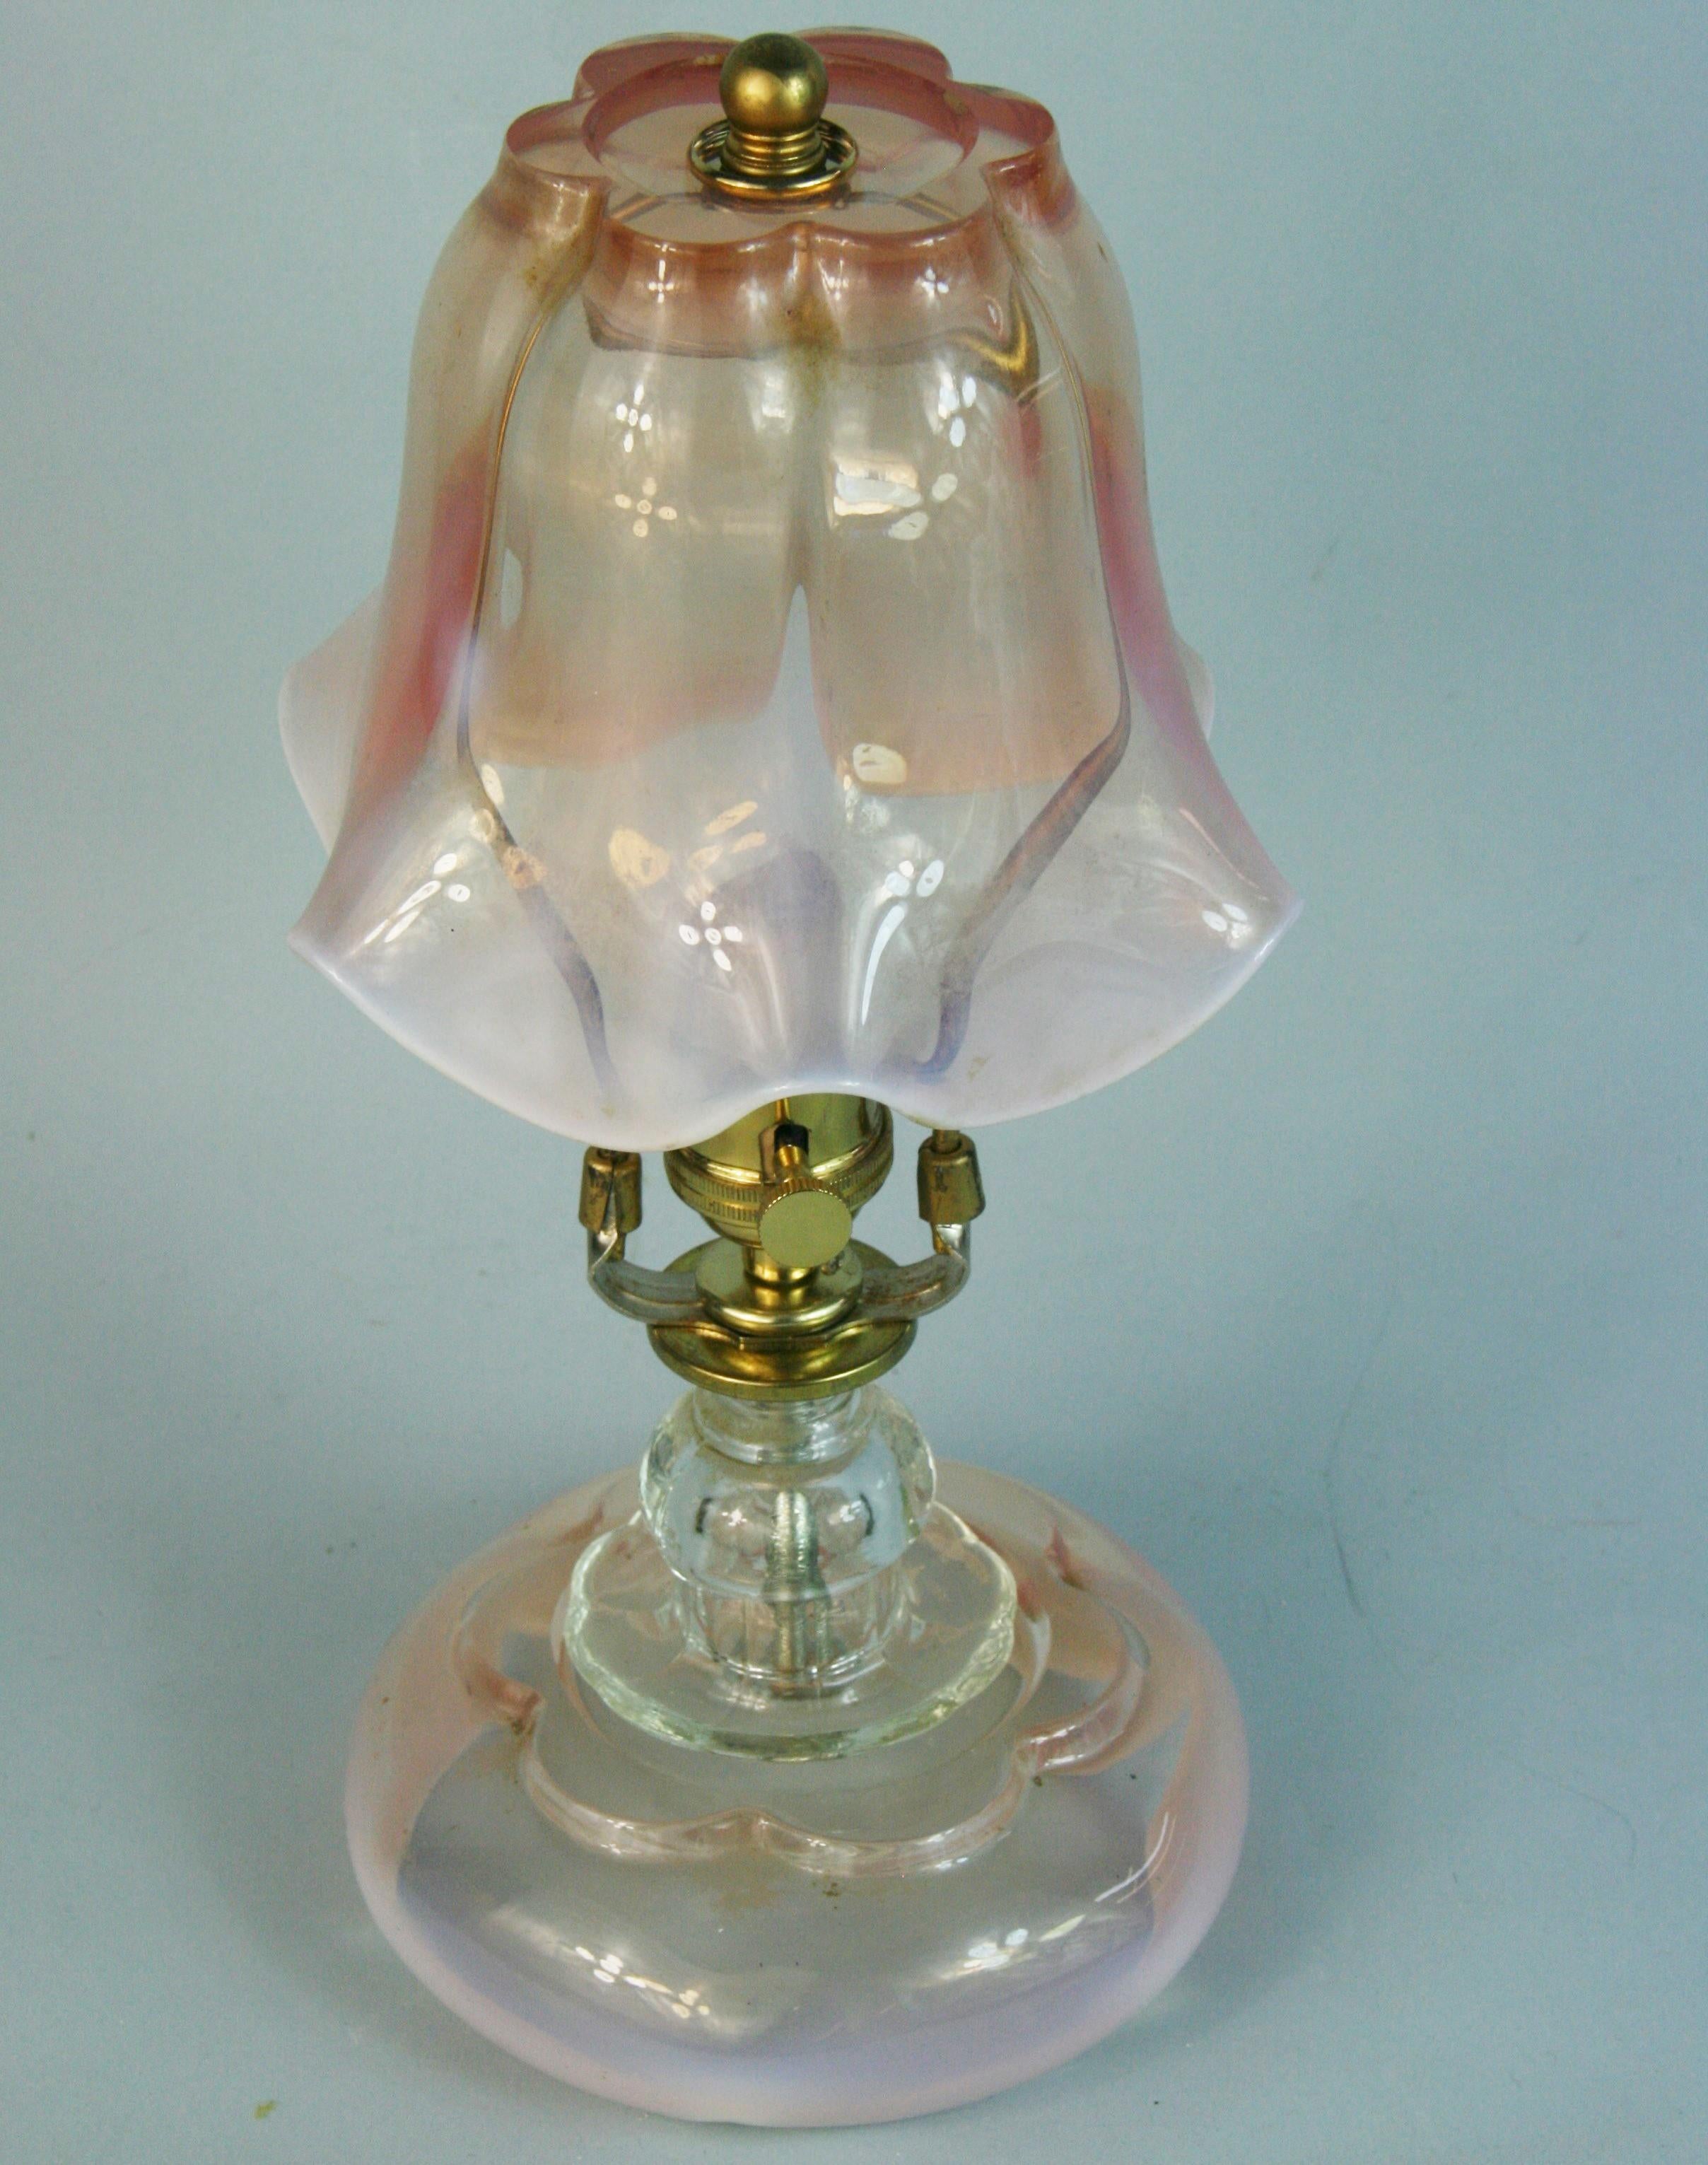 1606 Superbe paire de lampes en verre de Murano d'Italie .1940's
Magnifique verre rose pâle, blanc et transparent.
Abat-jour en forme de cloche avec bord scolopé.
Verre transparent séparé de l'abat-jour en verre et de la base
Rewired s'intéresse aux